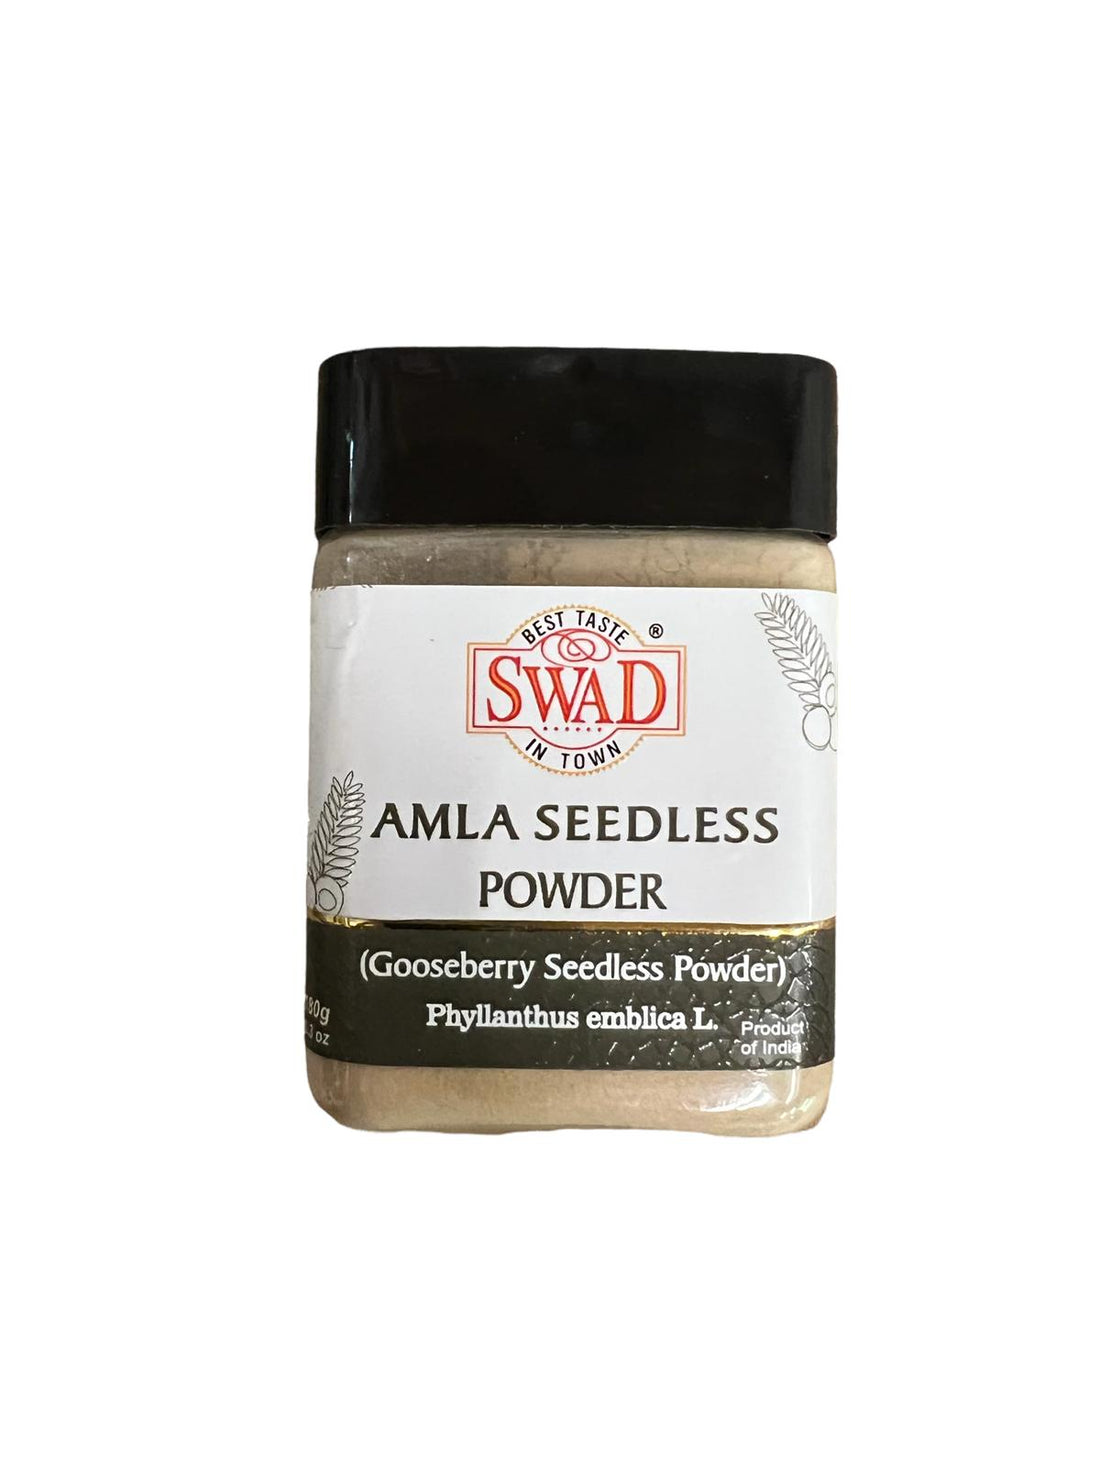 Gooseberry Seedless Powder (Amla Seedless Powder)